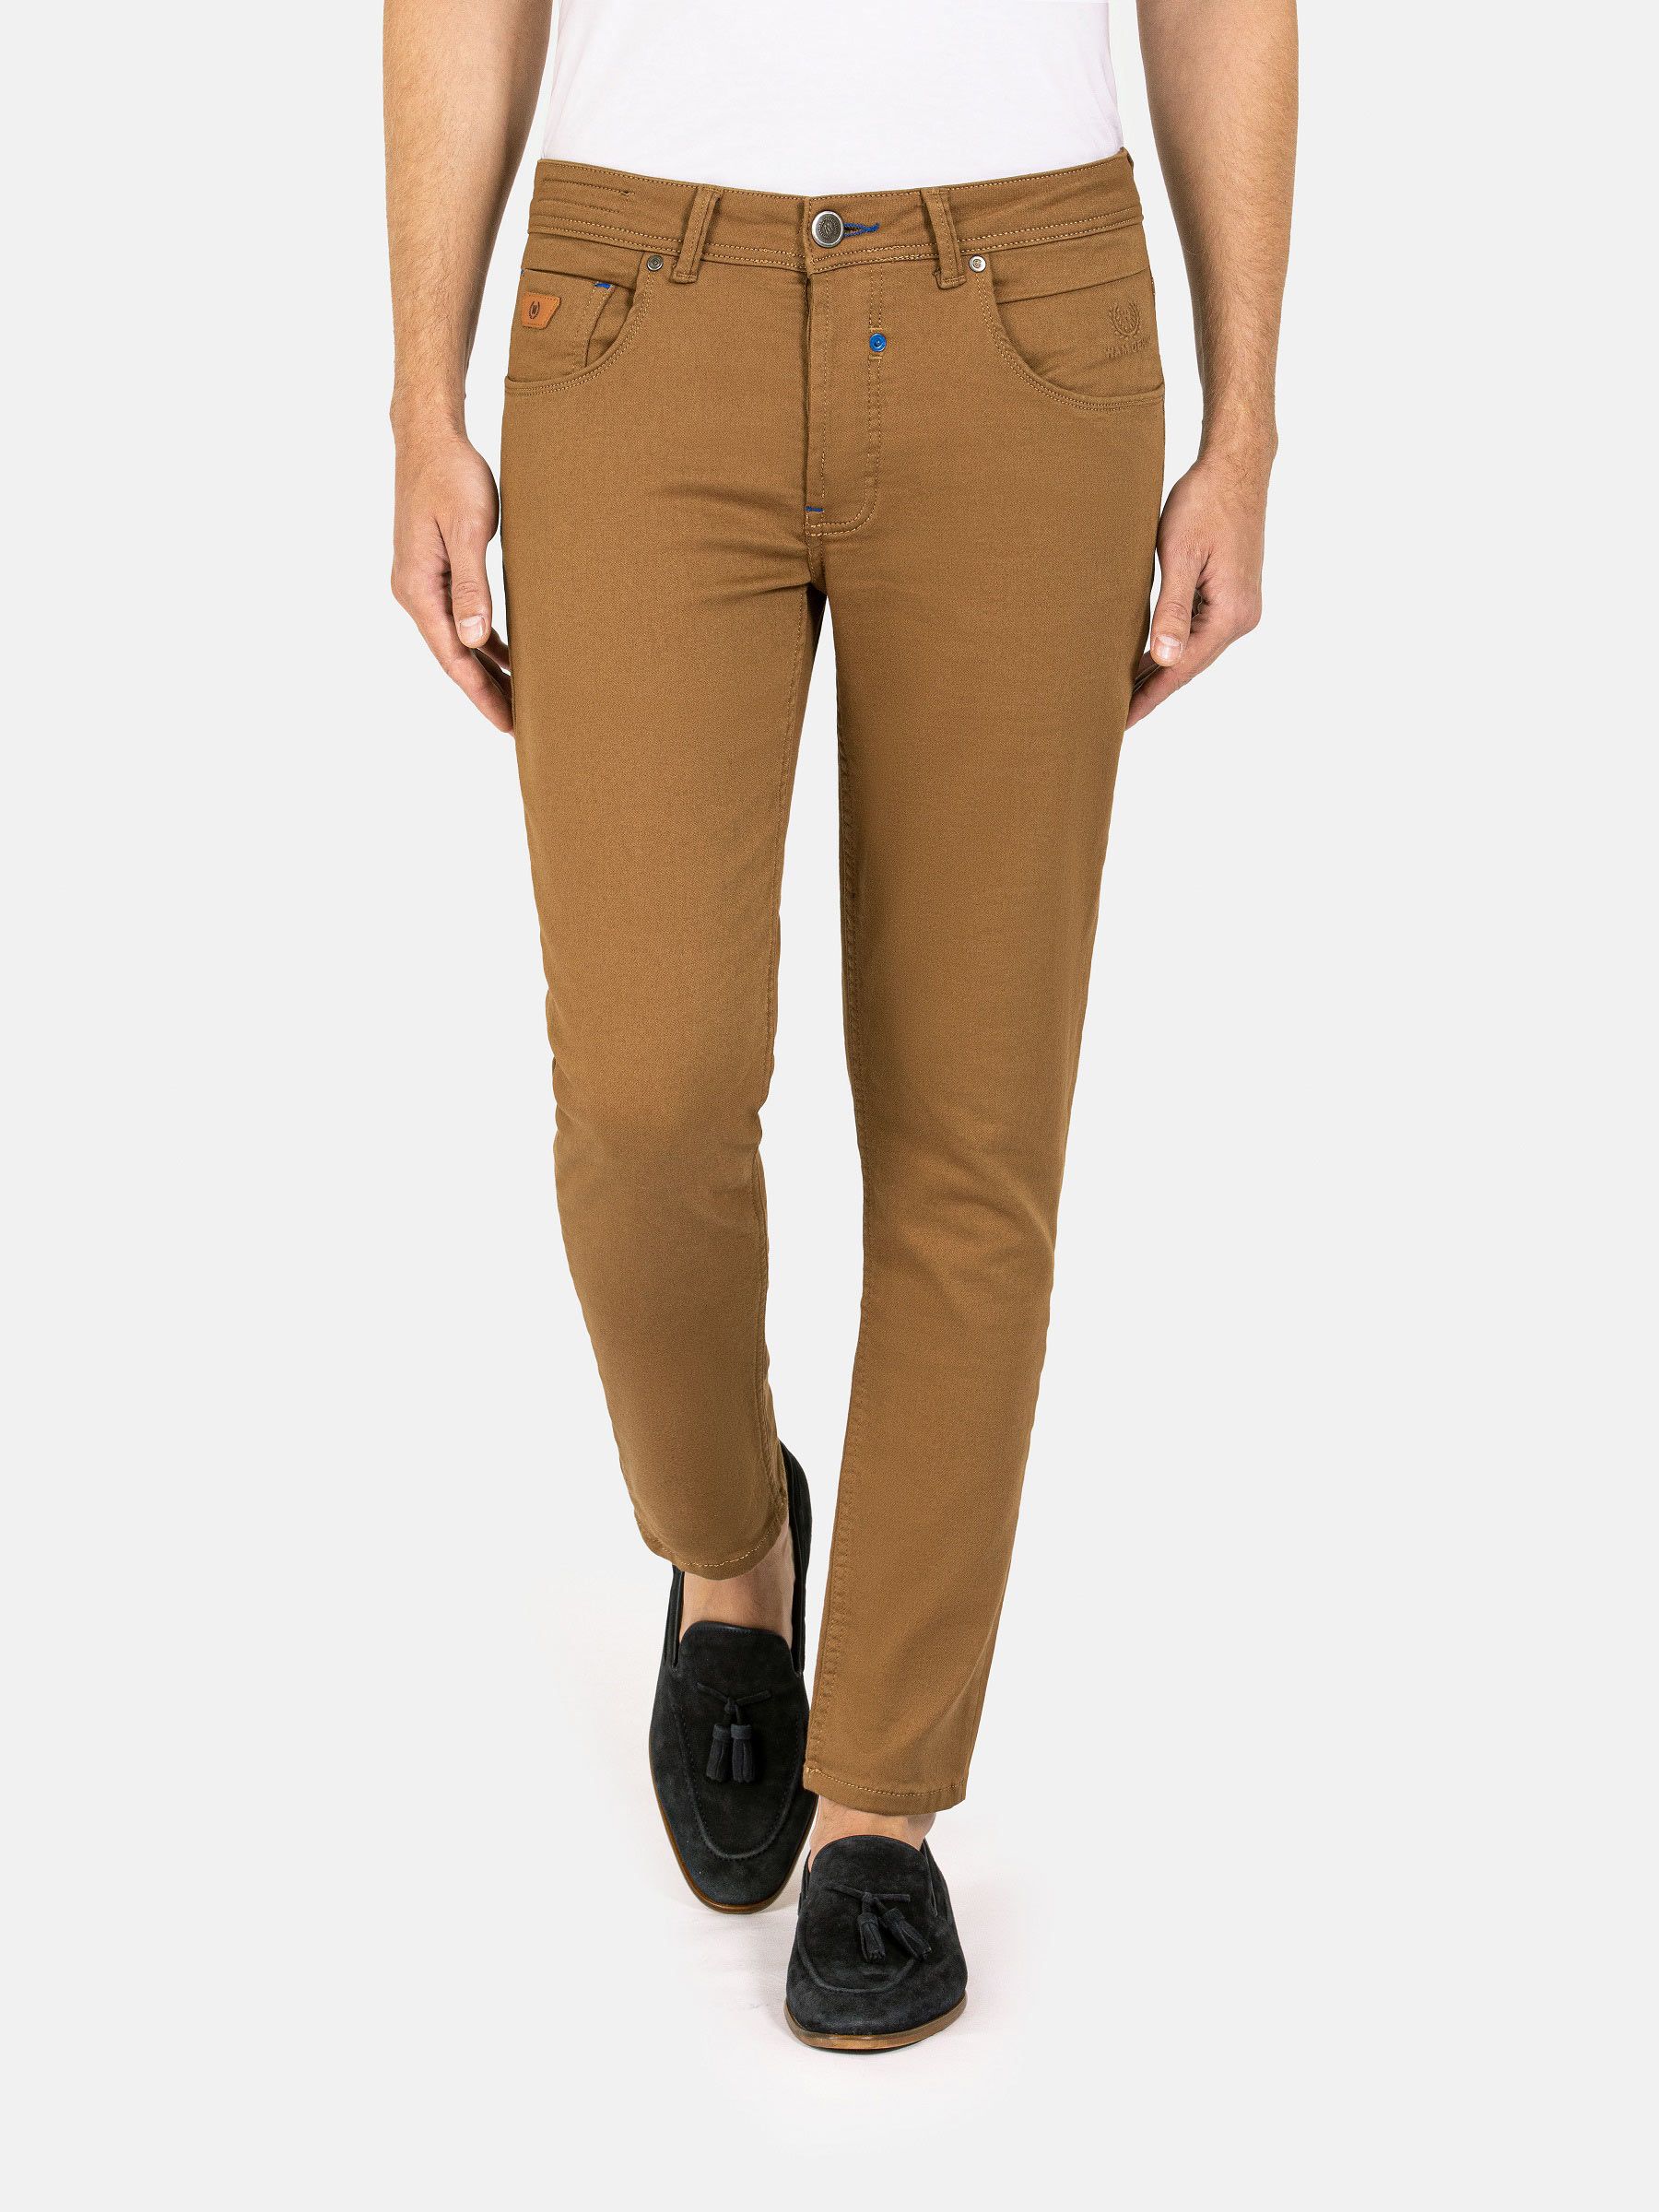 huwelijk jungle Monumentaal Jeans voor heren in neutrale tinten- Beige broek voor vrijetijdskleding-  Beige slim-fit jeans voor h